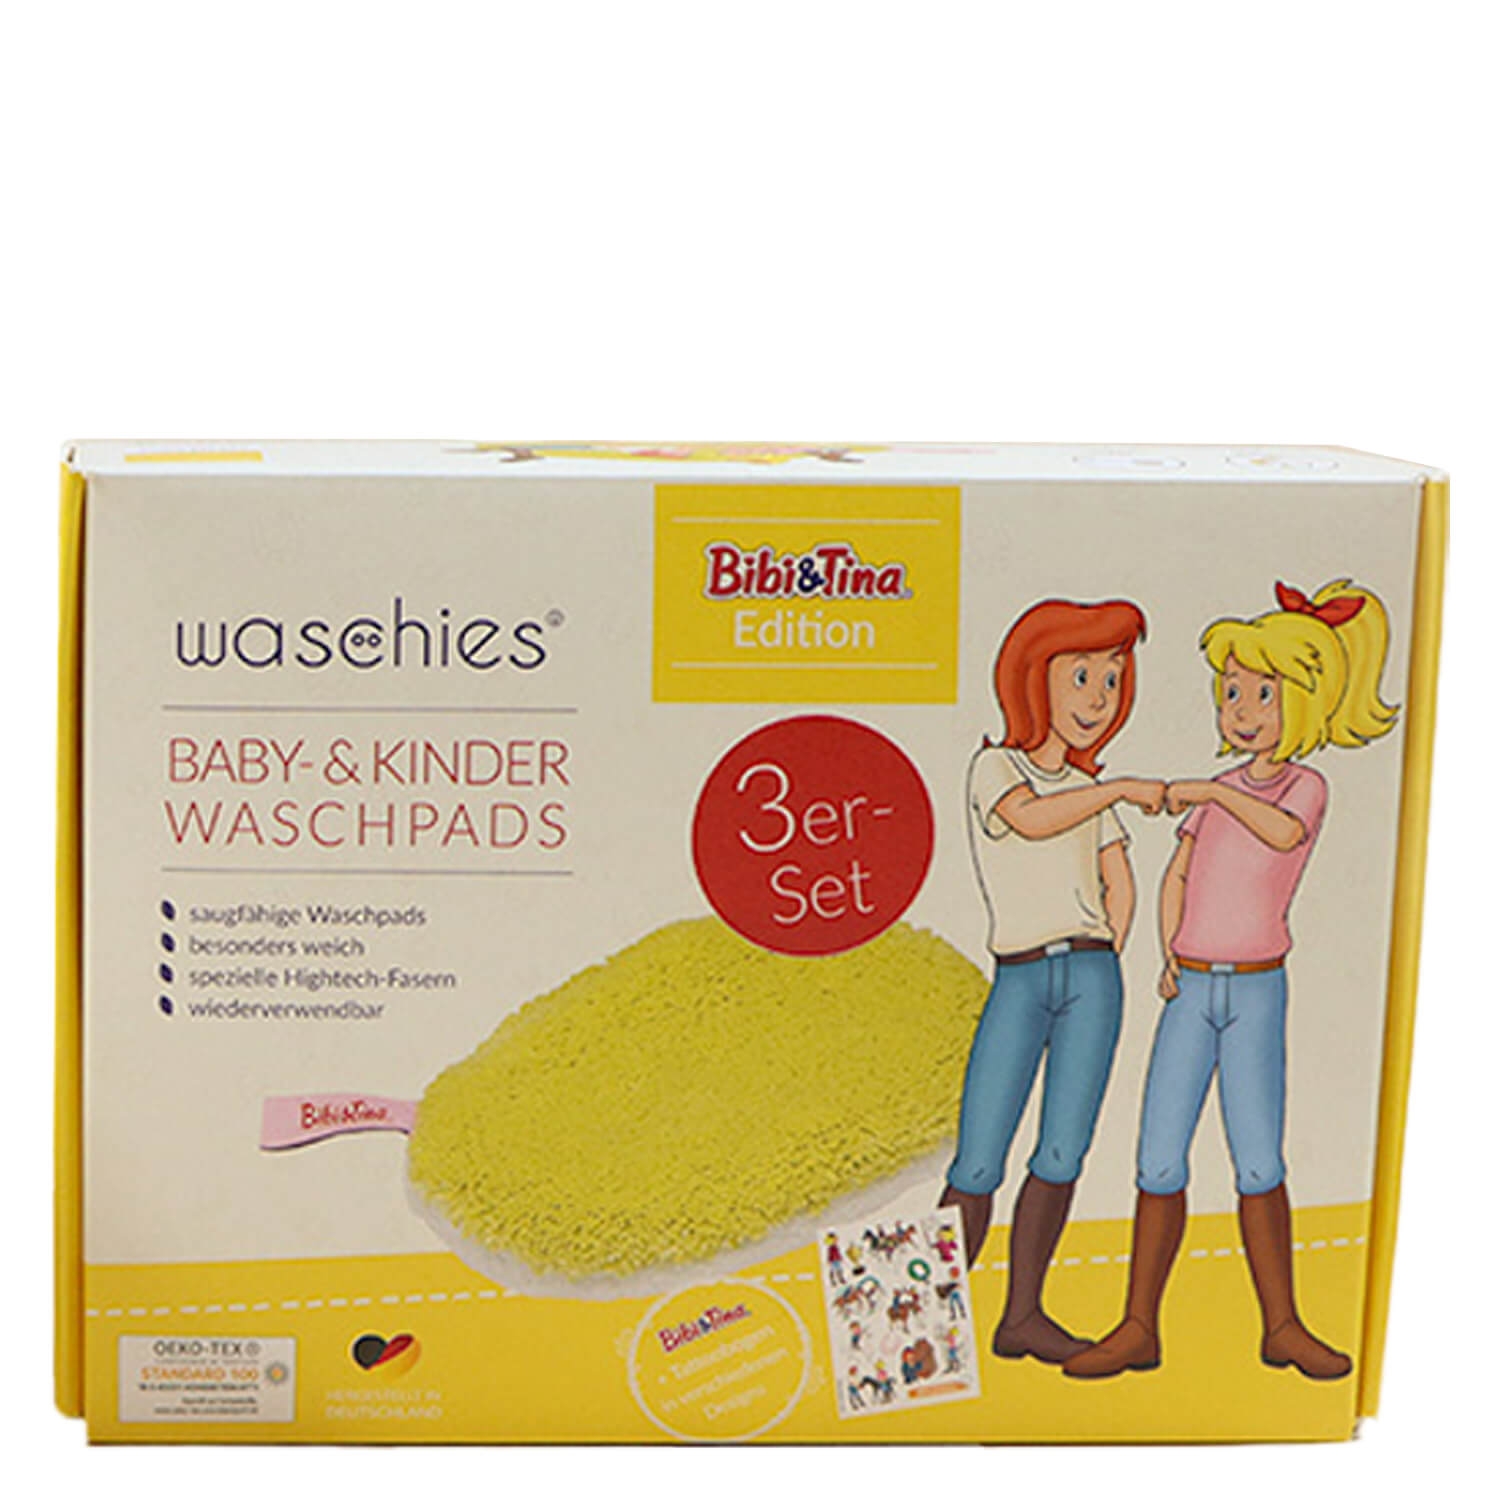 Product image from Waschies Kidsline - Waschpads für Babys & Kinder Bibi&Tina Gelb Edition